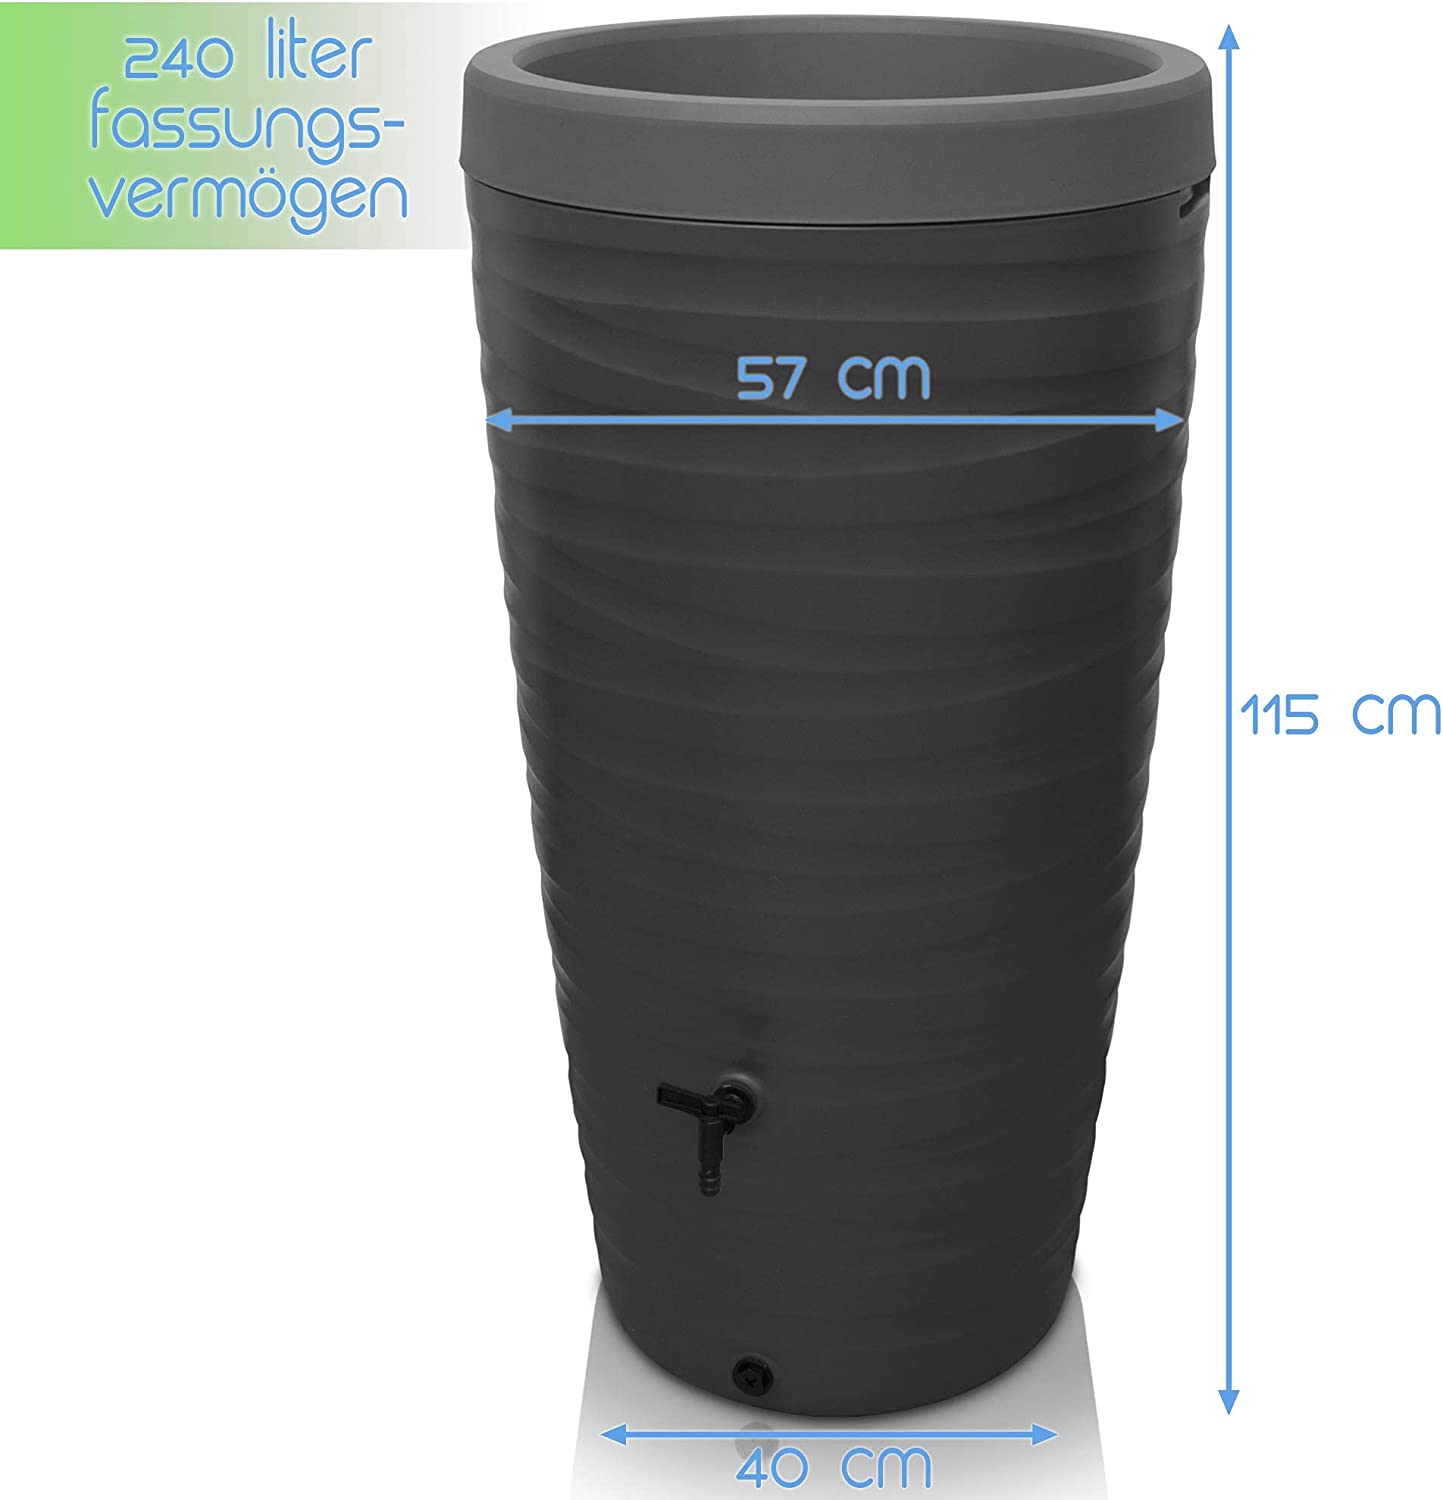 Eine schwarze, zusammenklappbare YourCasa Regentonne 240 Liter [Wave Design] – Frostsicher & UV-beständig mit den Maßen: Höhe 115 cm, Durchmesser 57 cm und Basisbreite 40 cm sowie einem F yourcasa-de.